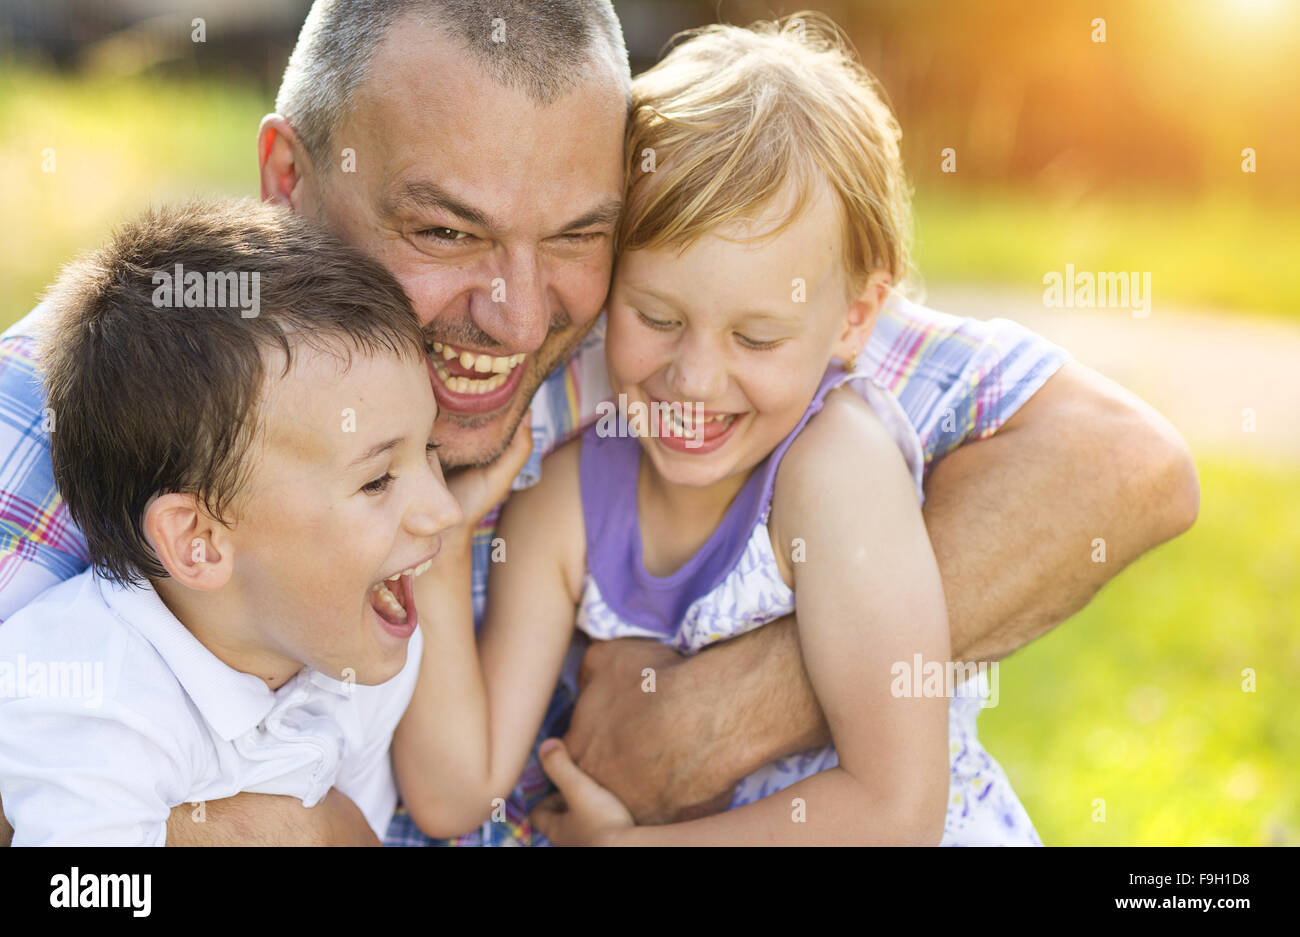 Vater mit seinen beiden Kindern gemeinsame Zeit draußen in der grünen Natur. Stockfoto